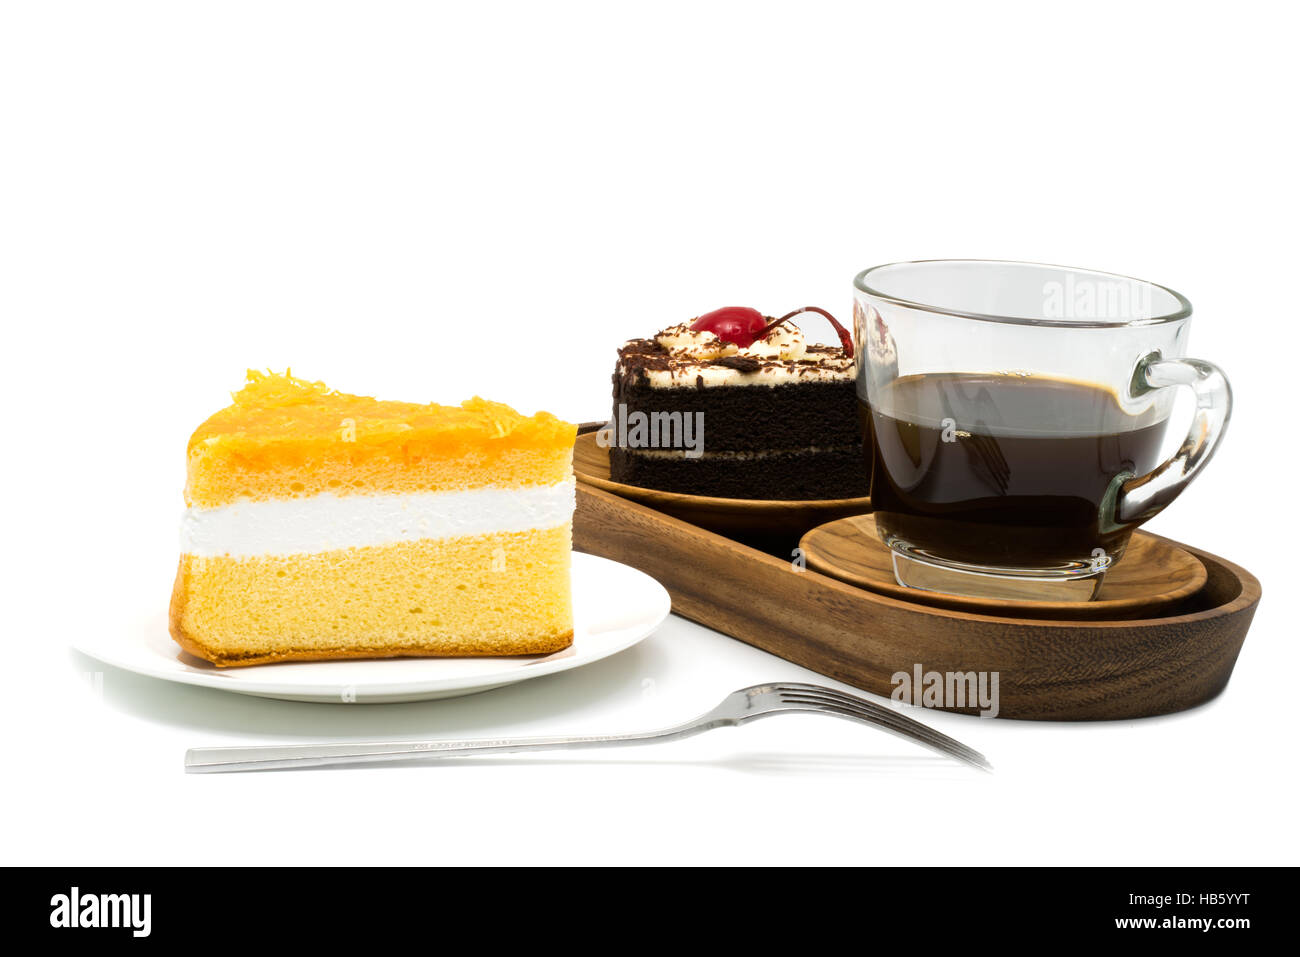 Chiffon torta in una piastra bianca e una tazza di caffè con torta al cioccolato in un vassoio di legno su sfondo bianco Foto Stock